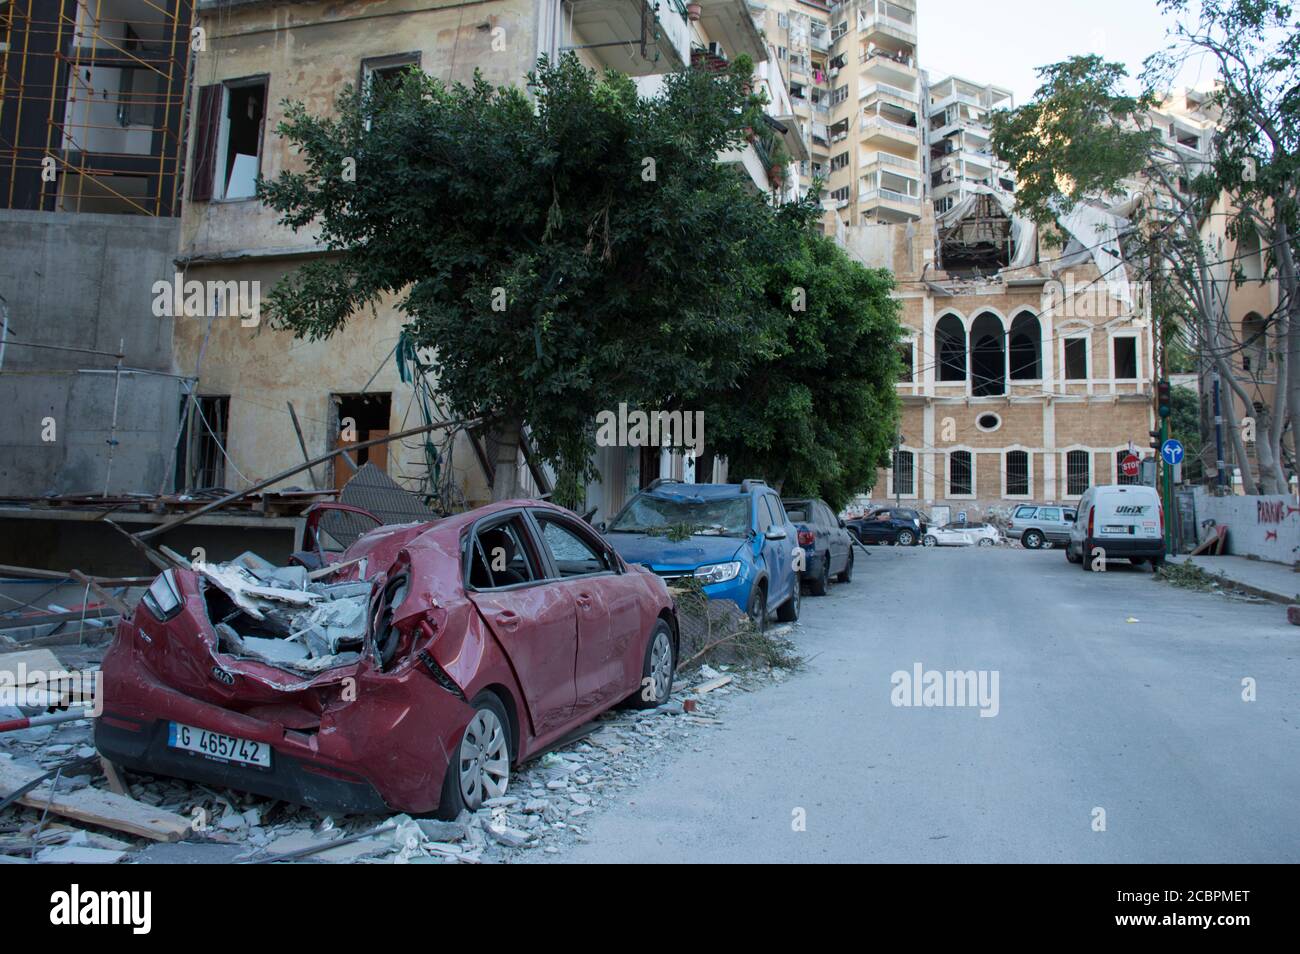 Beirut, Libano, 6 agosto 2020. Dopo l'esplosione di Beirut, e giovani libanesi e volontari che raccolgono le macerie e aiutano le persone. Il Foto Stock